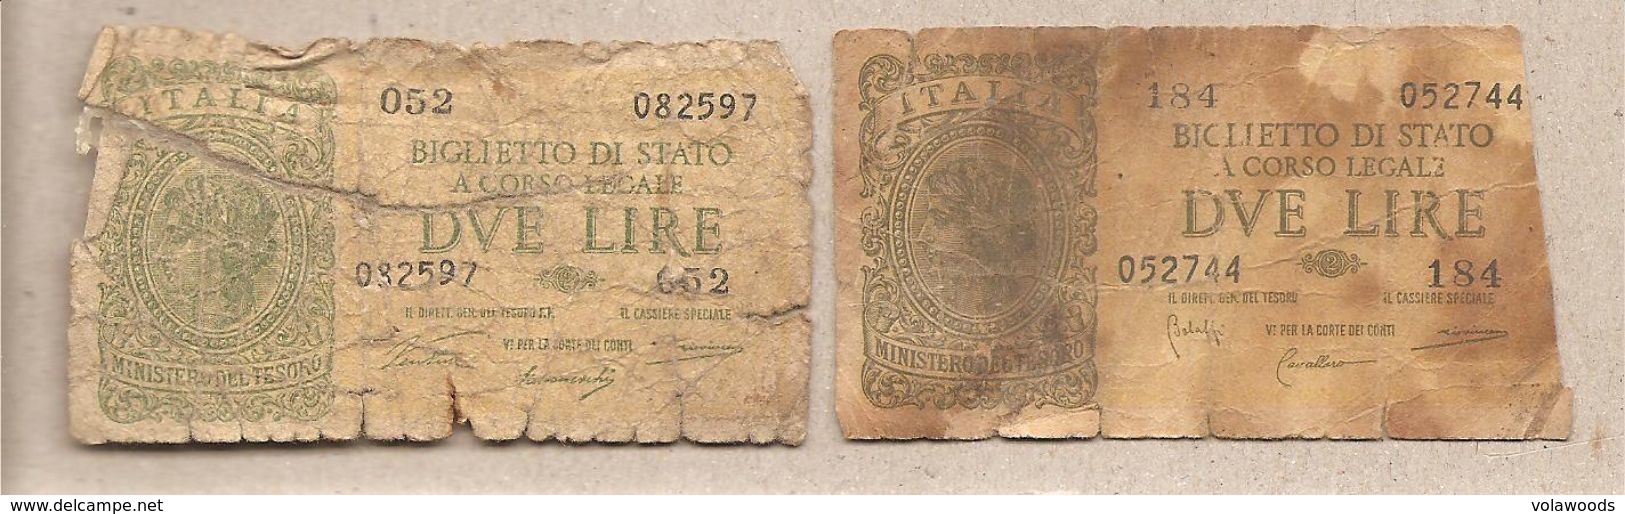 Italia - Banconote Circolate Da 2 Lire "Italia Laureata" - 1944 Serie Completa Dei Due Decreti Emessi - Collections